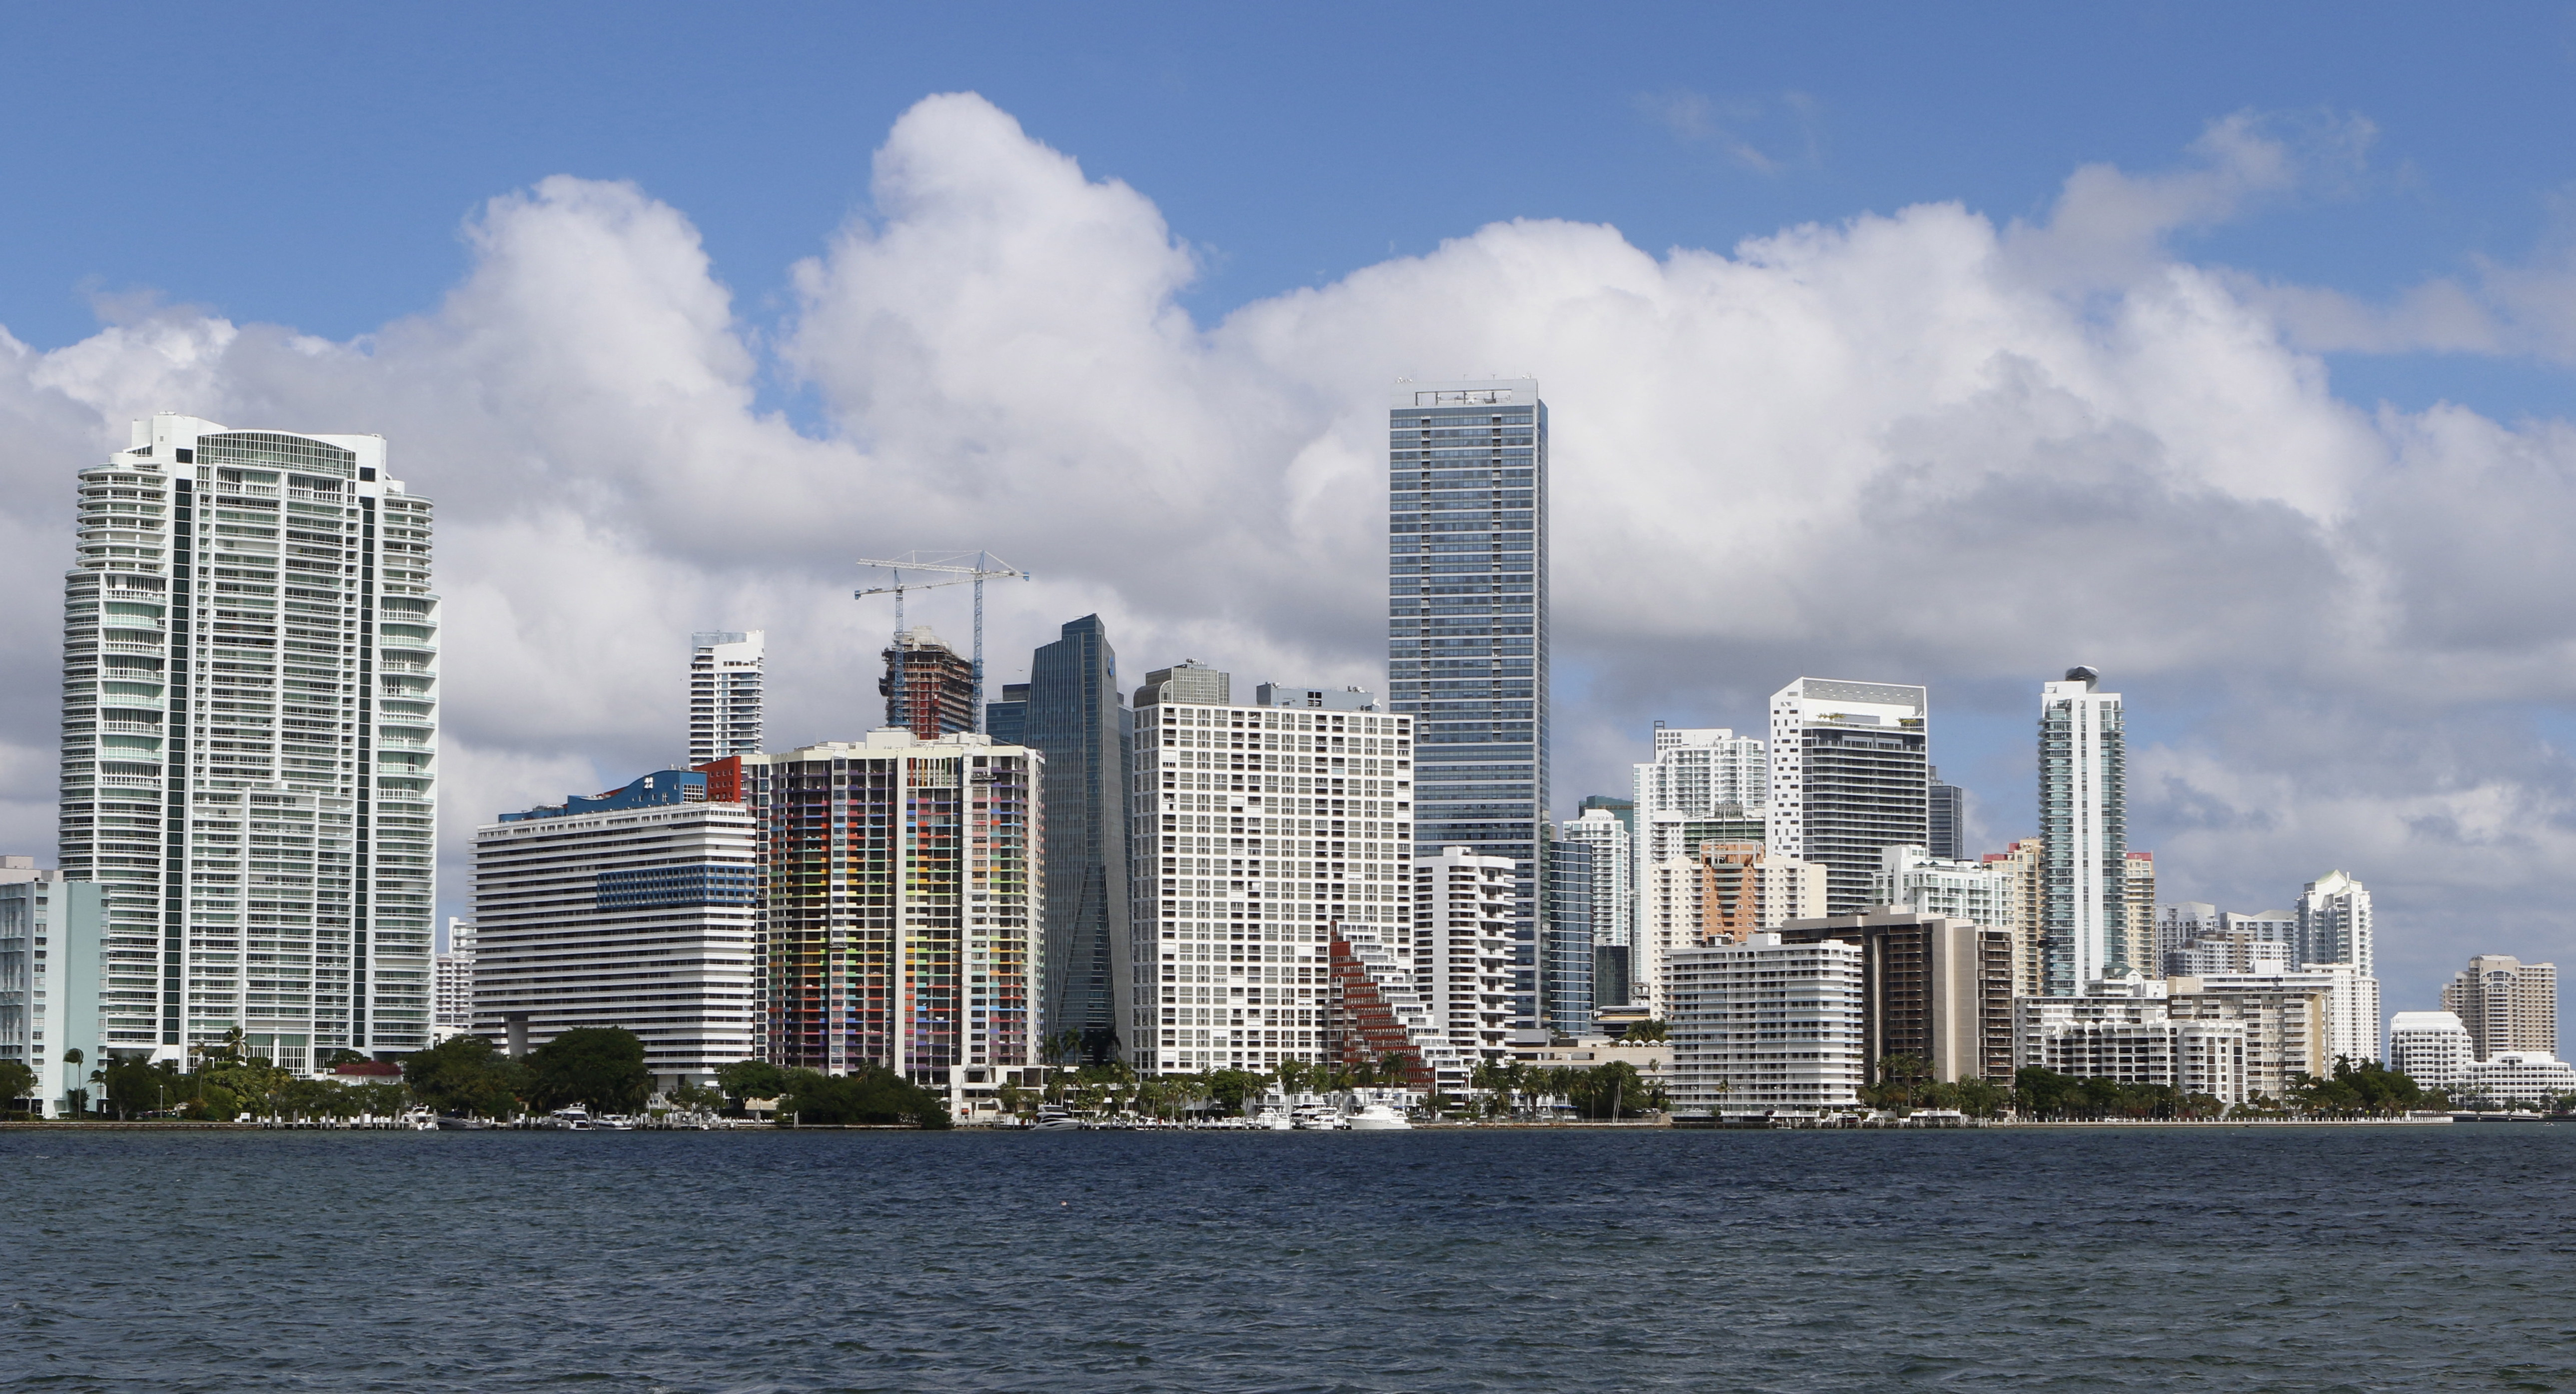 The downtown skyline of Miami, Florida